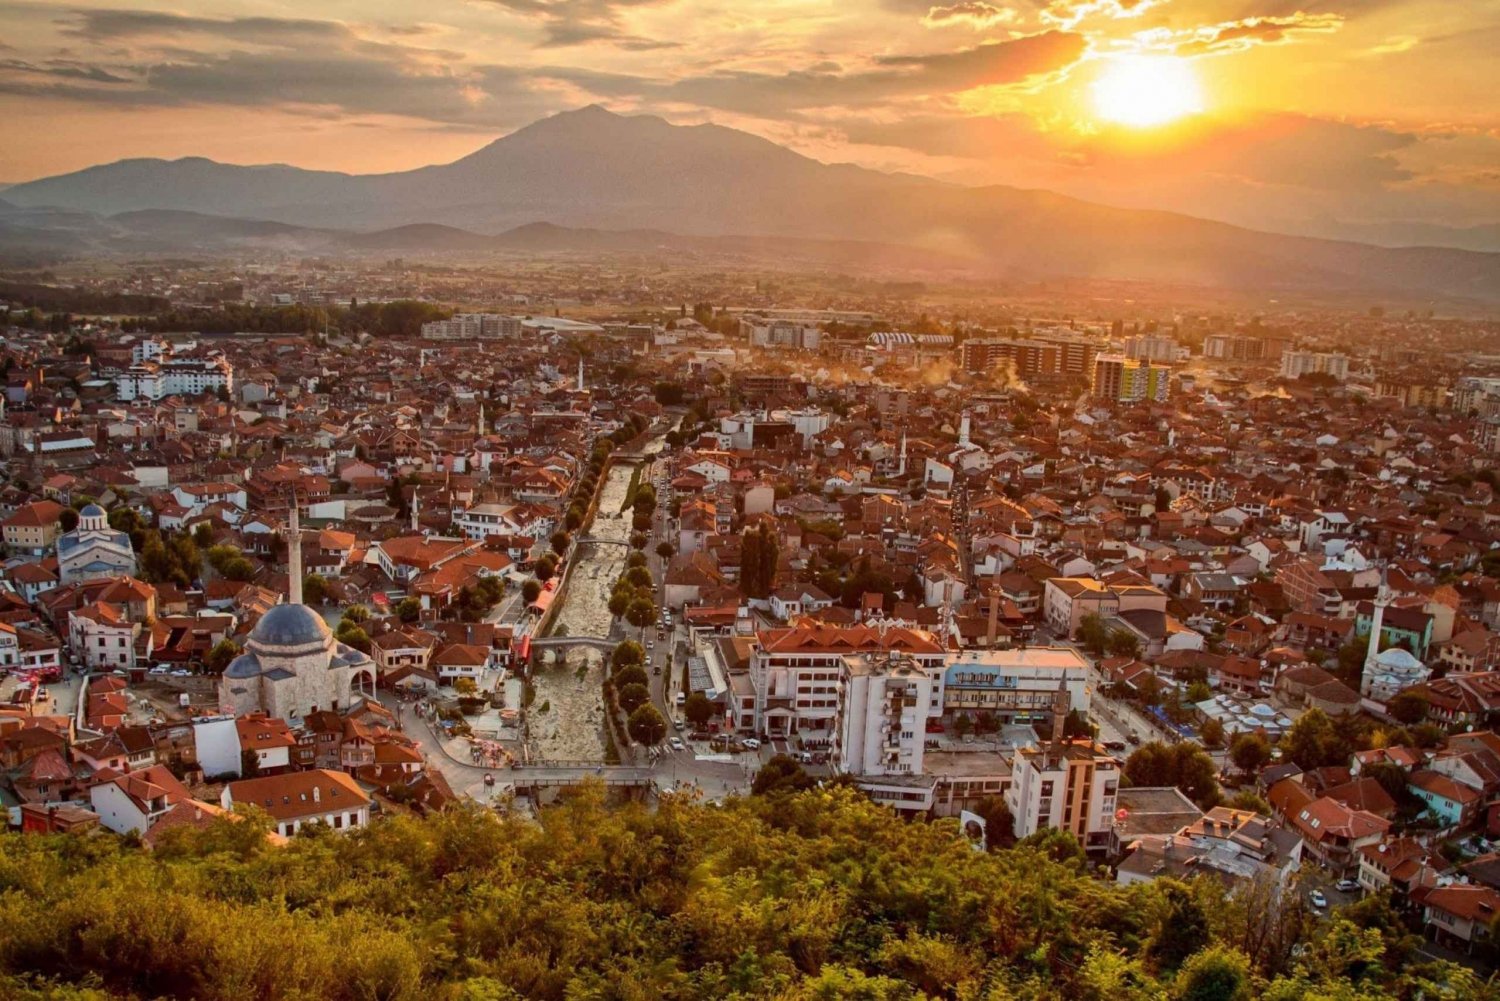 Day Tour of Kosovo from Tirana, Pristina and Prizren